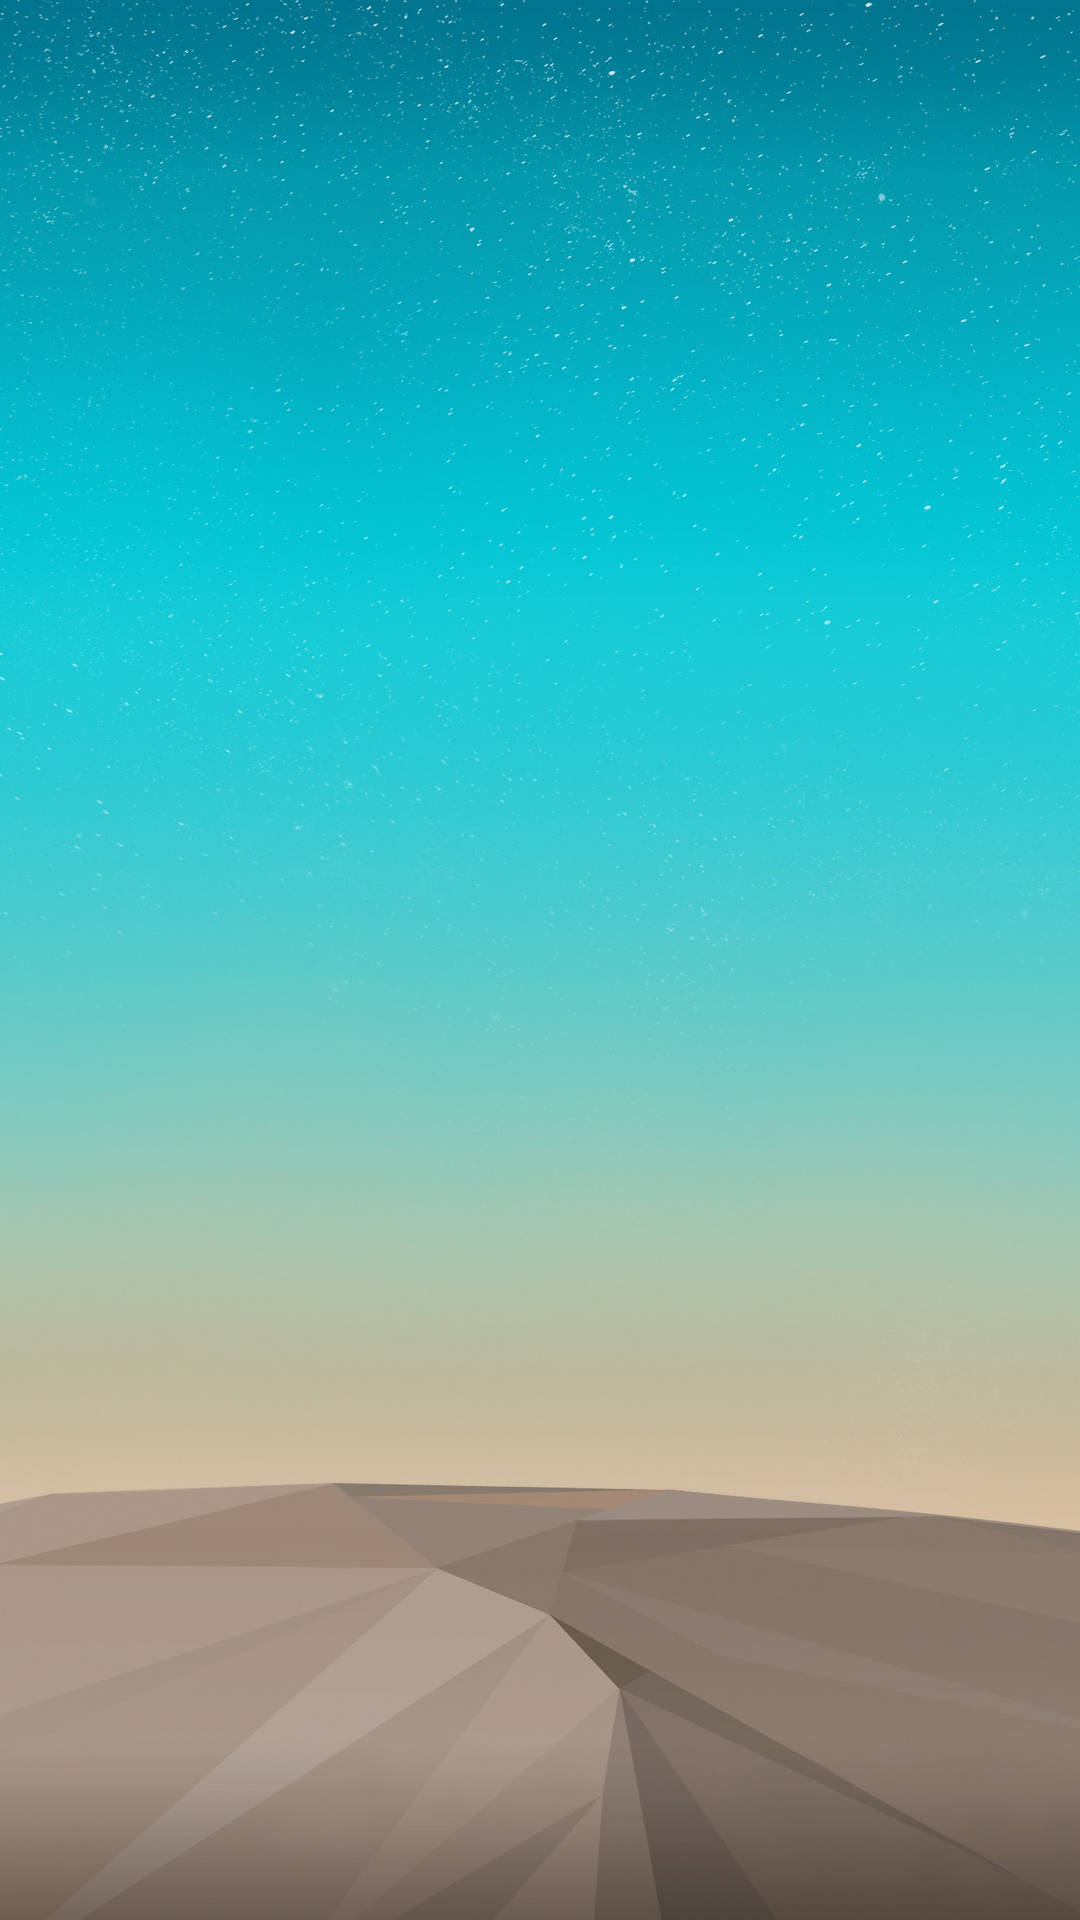 Geometric Desert Illustration Iphone Wallpaper